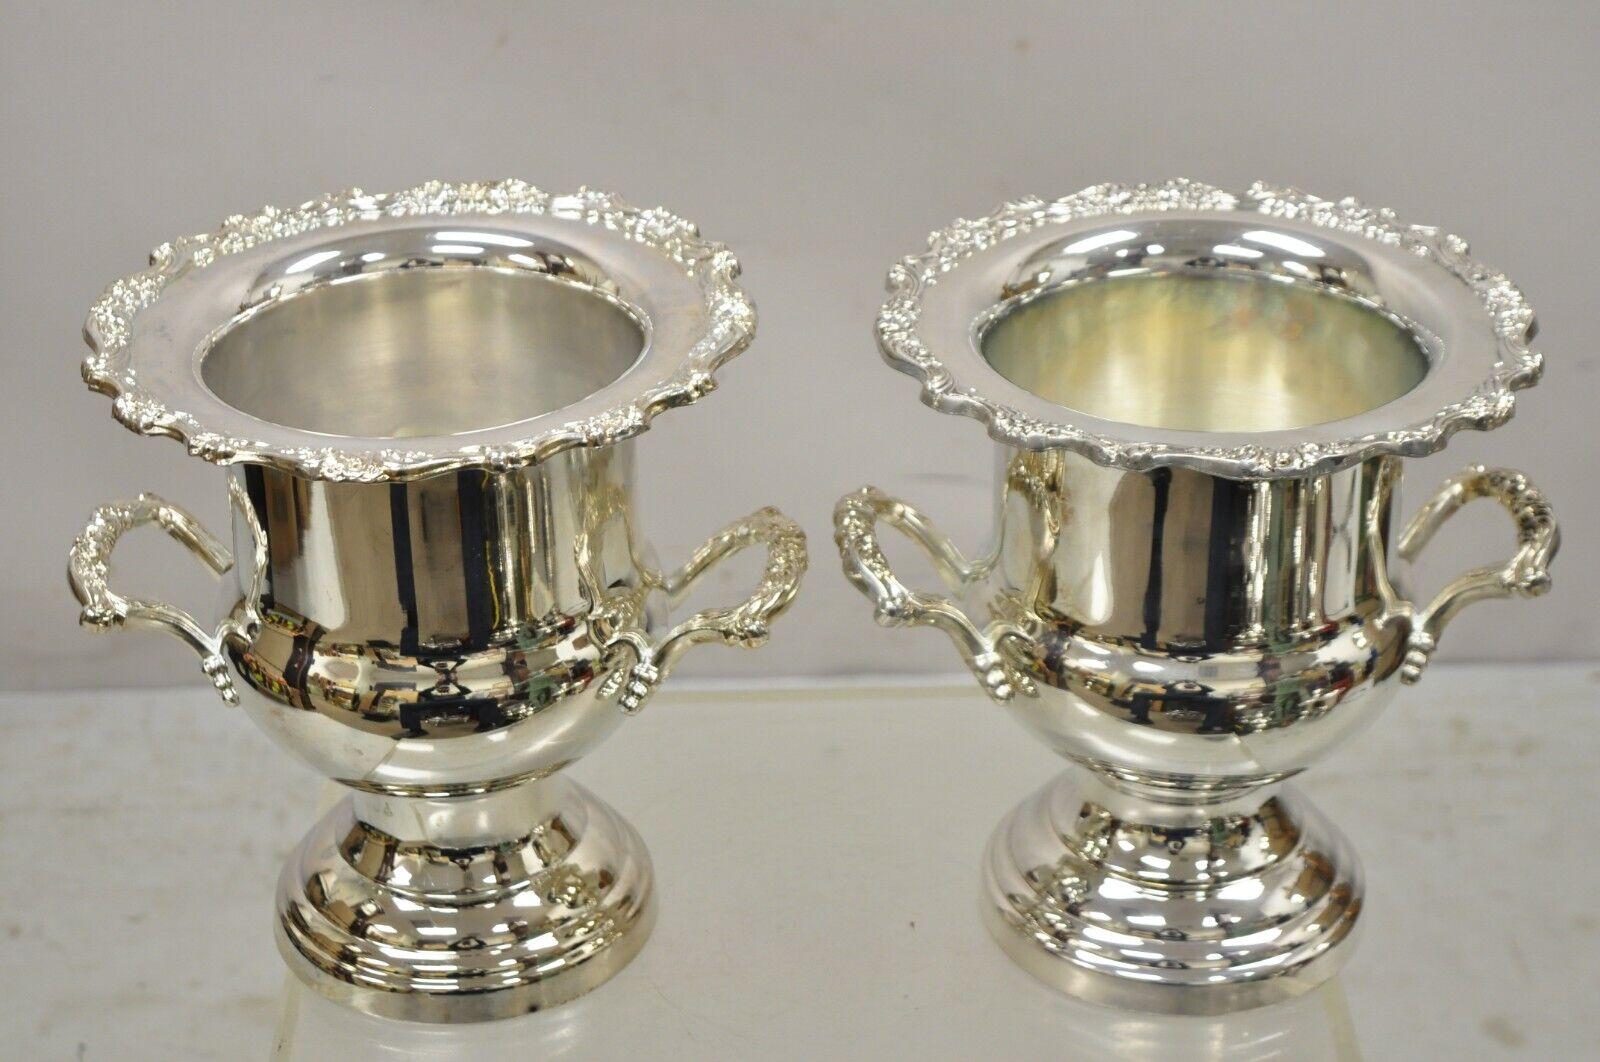 Vintage Oneida Regency Style Silver Plated Champagne Ice Bucket - ein Paar. ArtikelmerkmaleGewölbte Zwillingshenkel, formschöne 